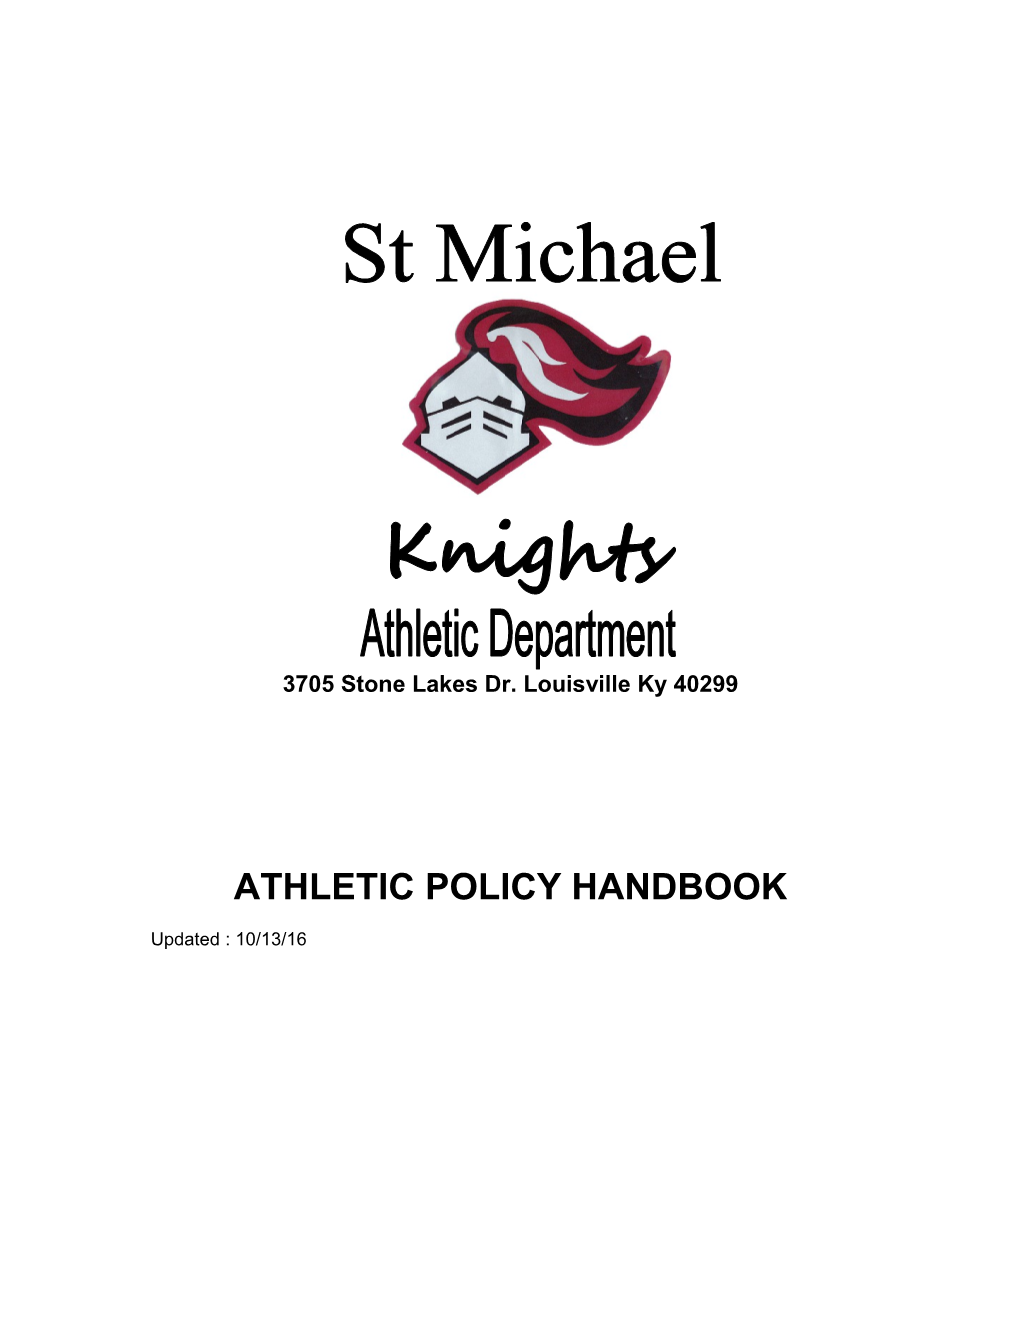 Athletic Policy Handbook